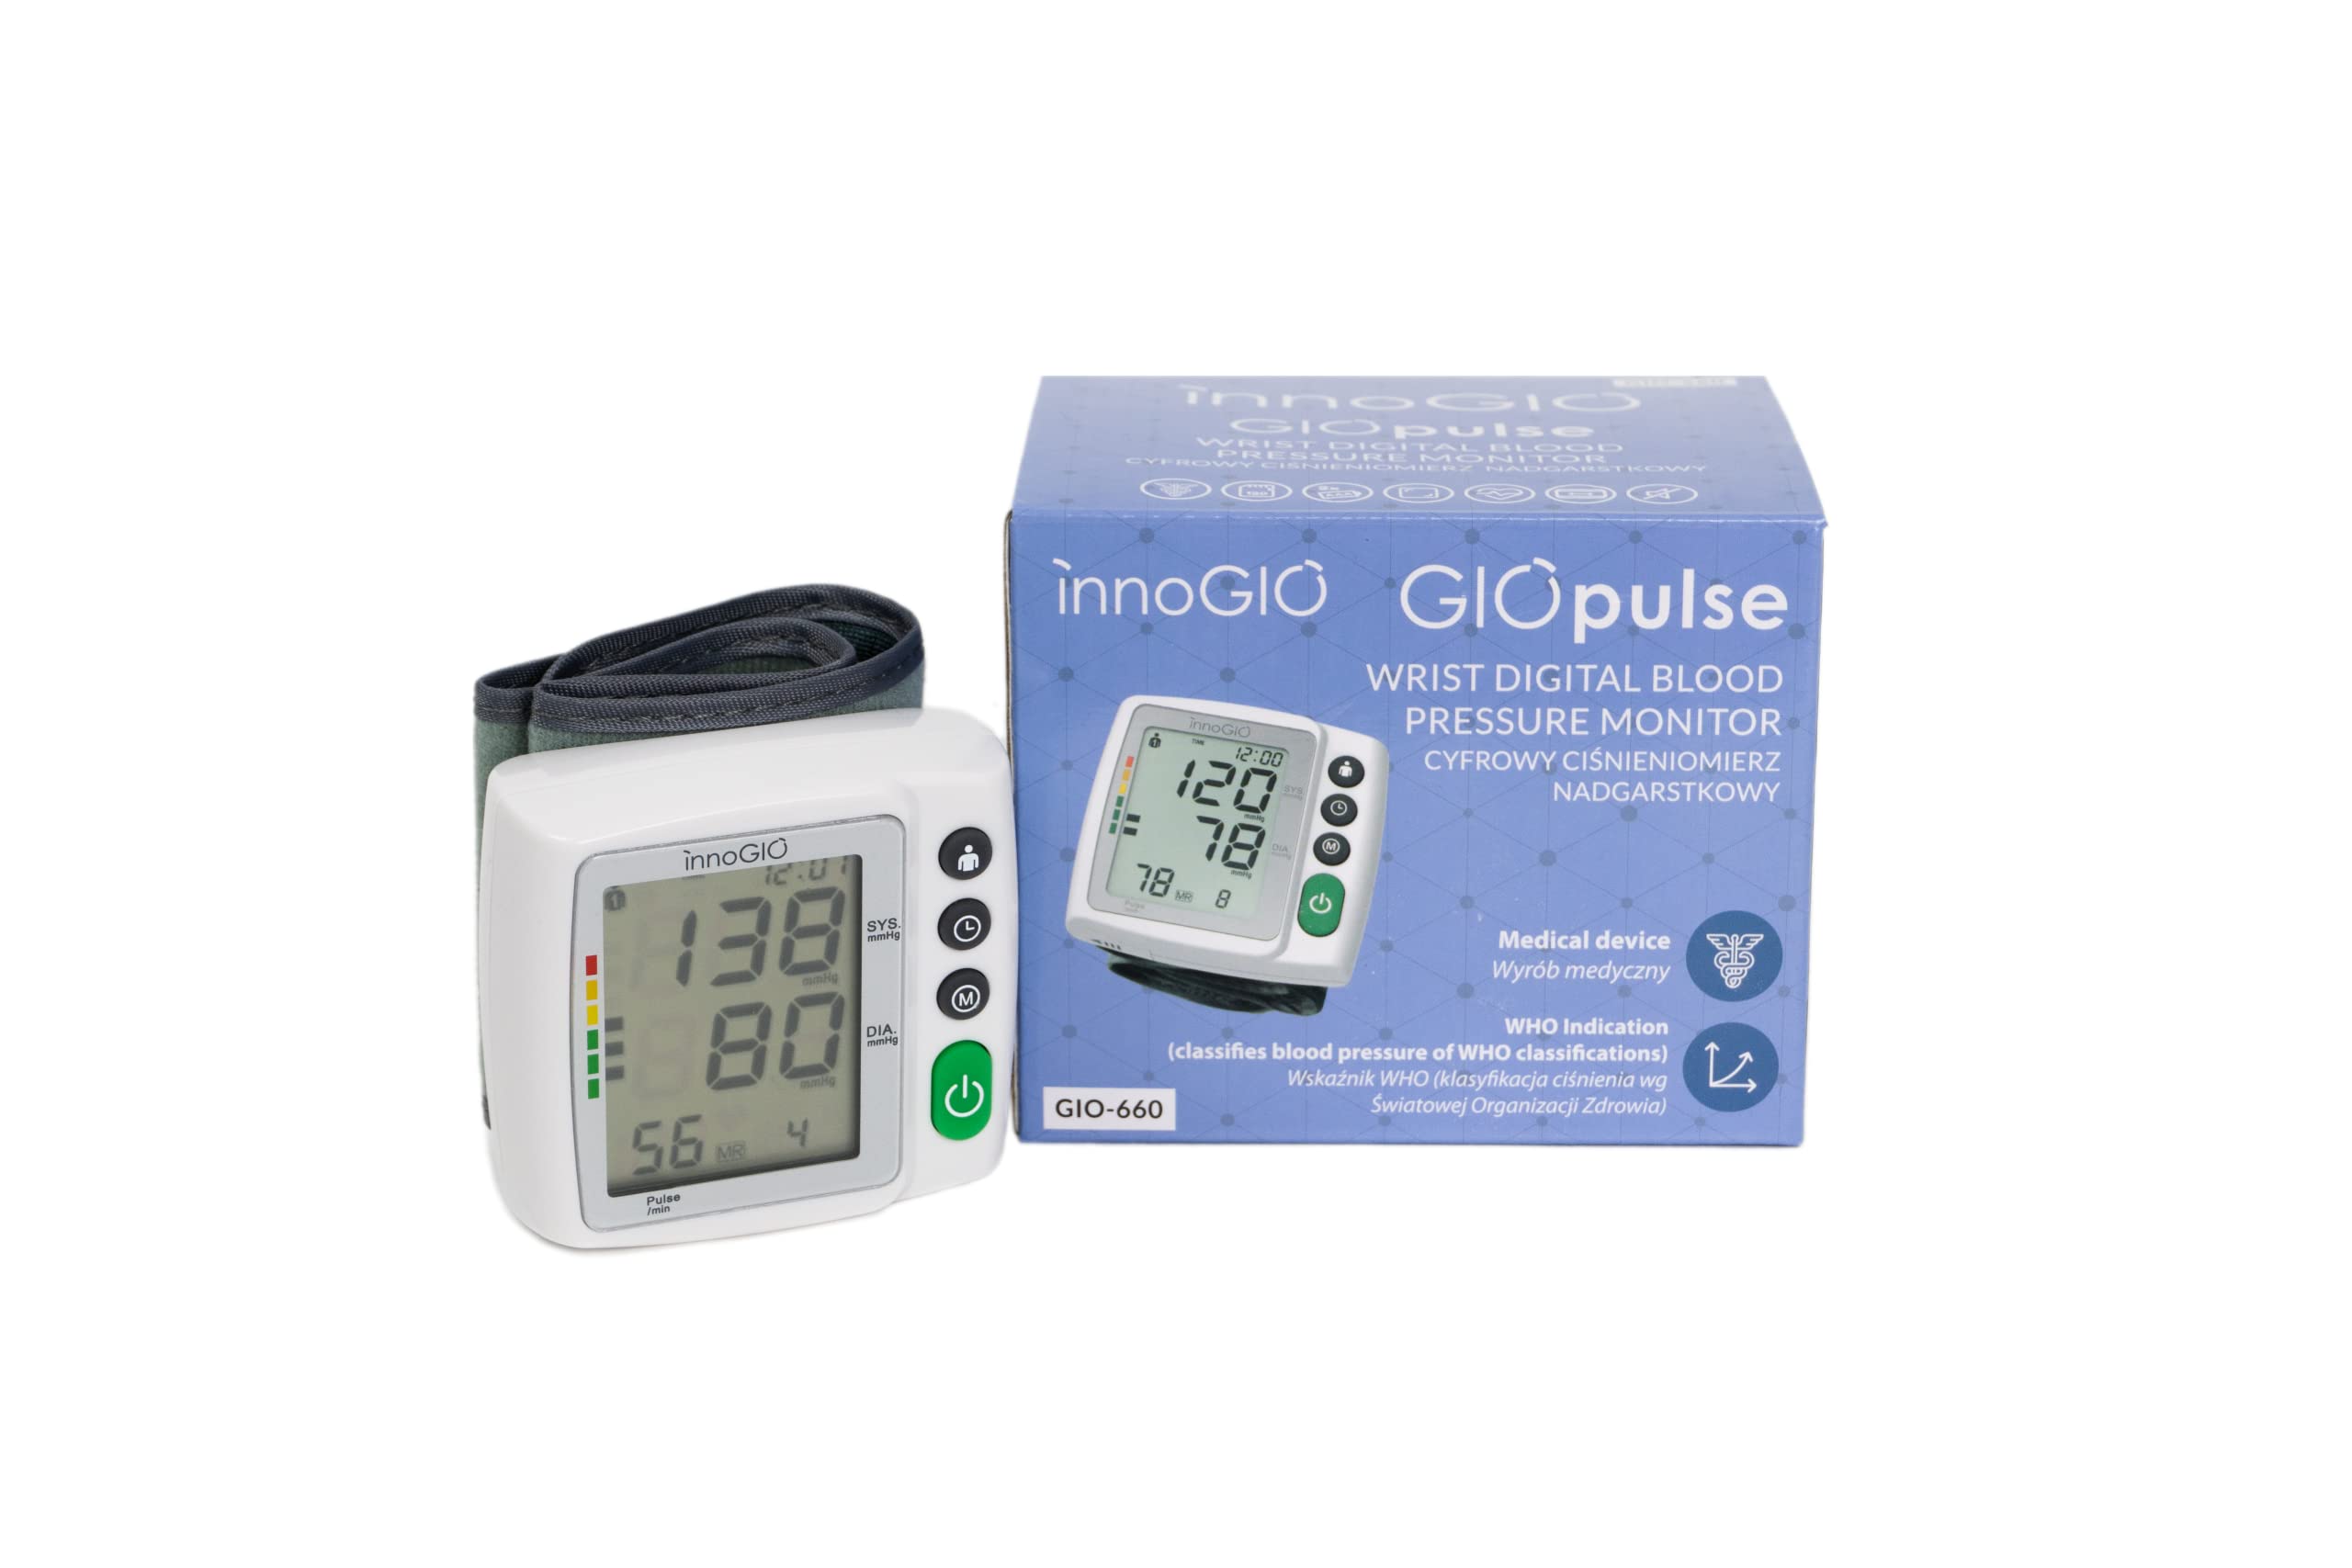 InnoGIO GIOpulse, Automatisches, Digitales Blutdruckmessgerät fürs Handgelenk mit Manschette, Messgerät für den Arteriellen Blutdruck, Herzfrequenz- & Arrhythmie-Erkennung